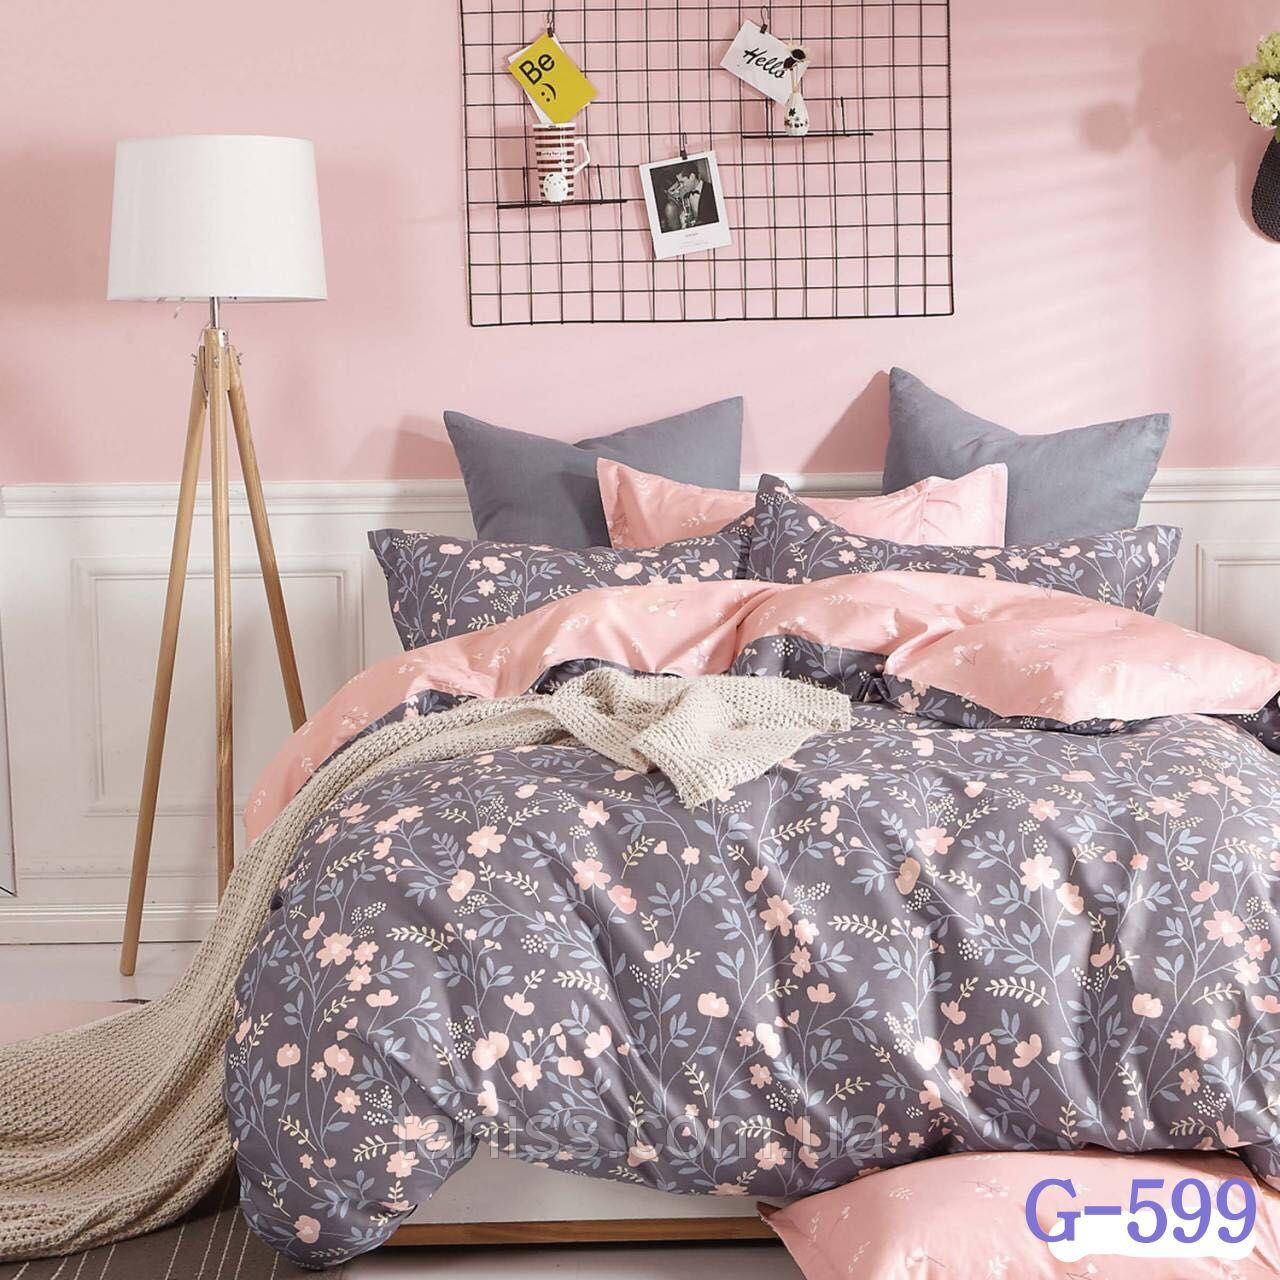 

Двухспальный набор постельного белья Бязь "Gold",розовый-серый, полянка (599)